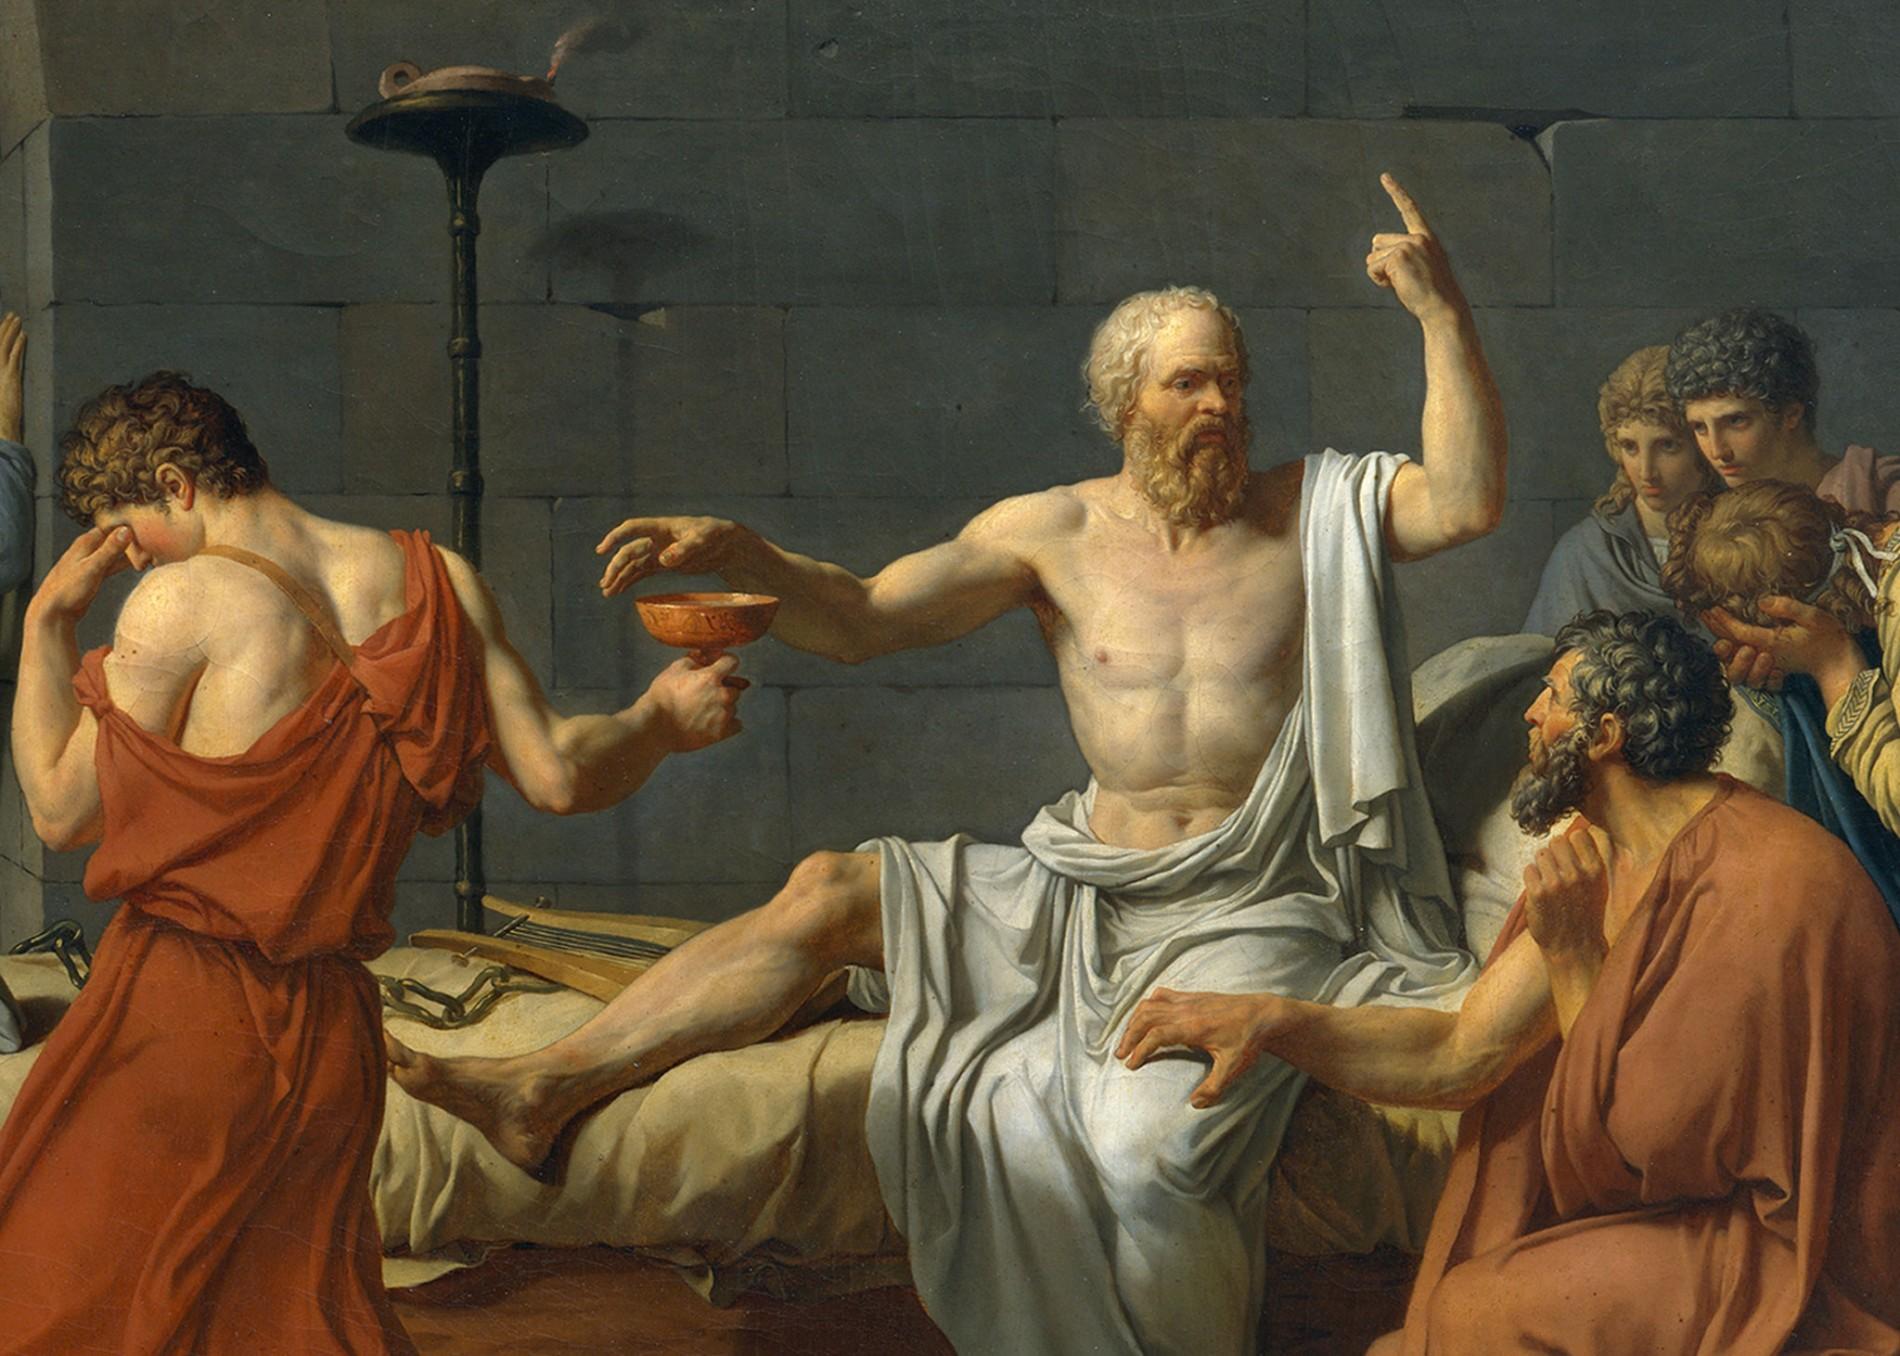  120 filósofos: Sócrates